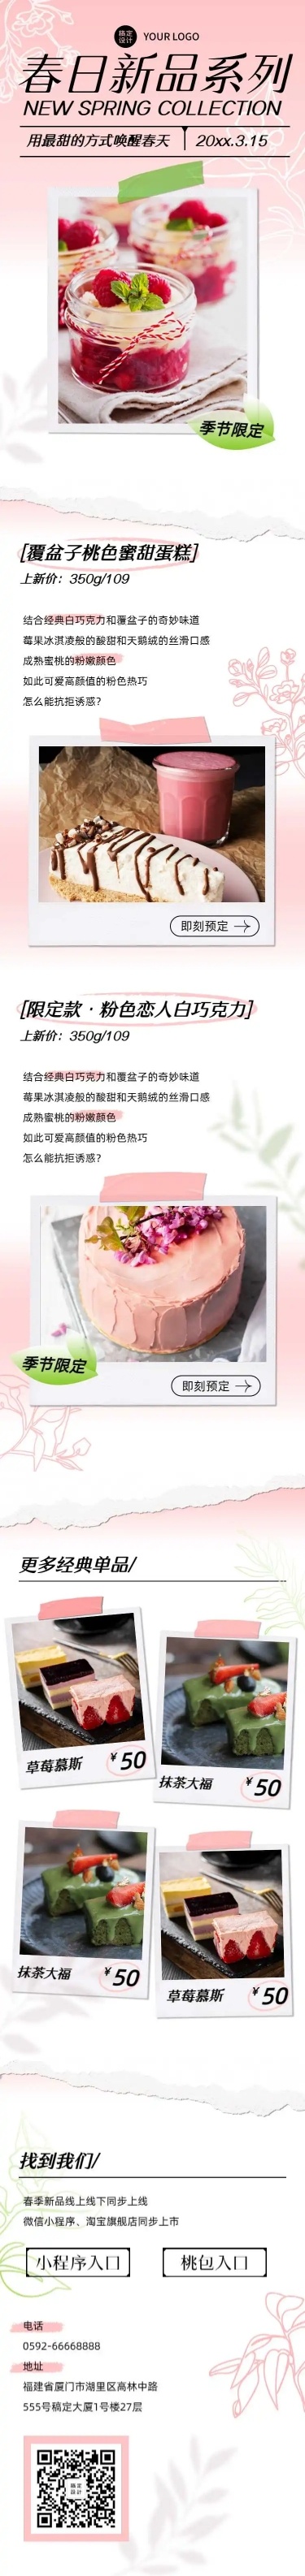 餐饮产品宣传推广粉色清新春天产品营销H5长页